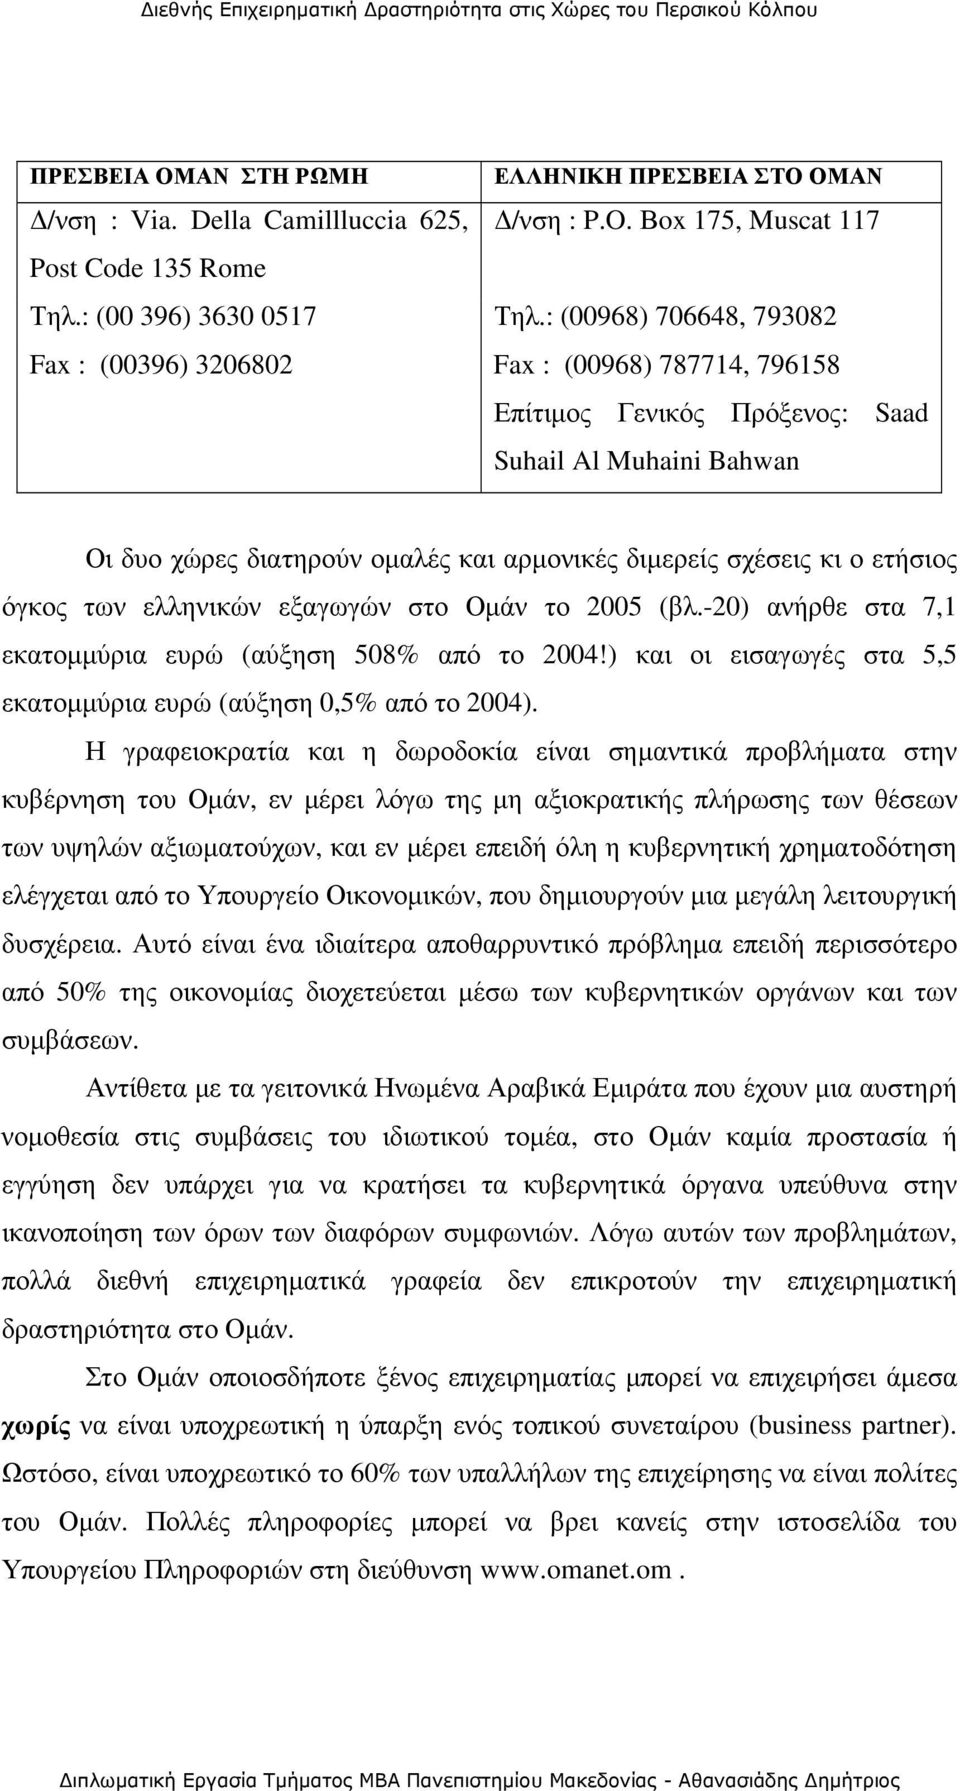 ετήσιος όγκος των ελληνικών εξαγωγών στο Οµάν το 2005 (βλ.-20) ανήρθε στα 7,1 εκατοµµύρια ευρώ (αύξηση 508% από το 2004!) και οι εισαγωγές στα 5,5 εκατοµµύρια ευρώ (αύξηση 0,5% από το 2004).